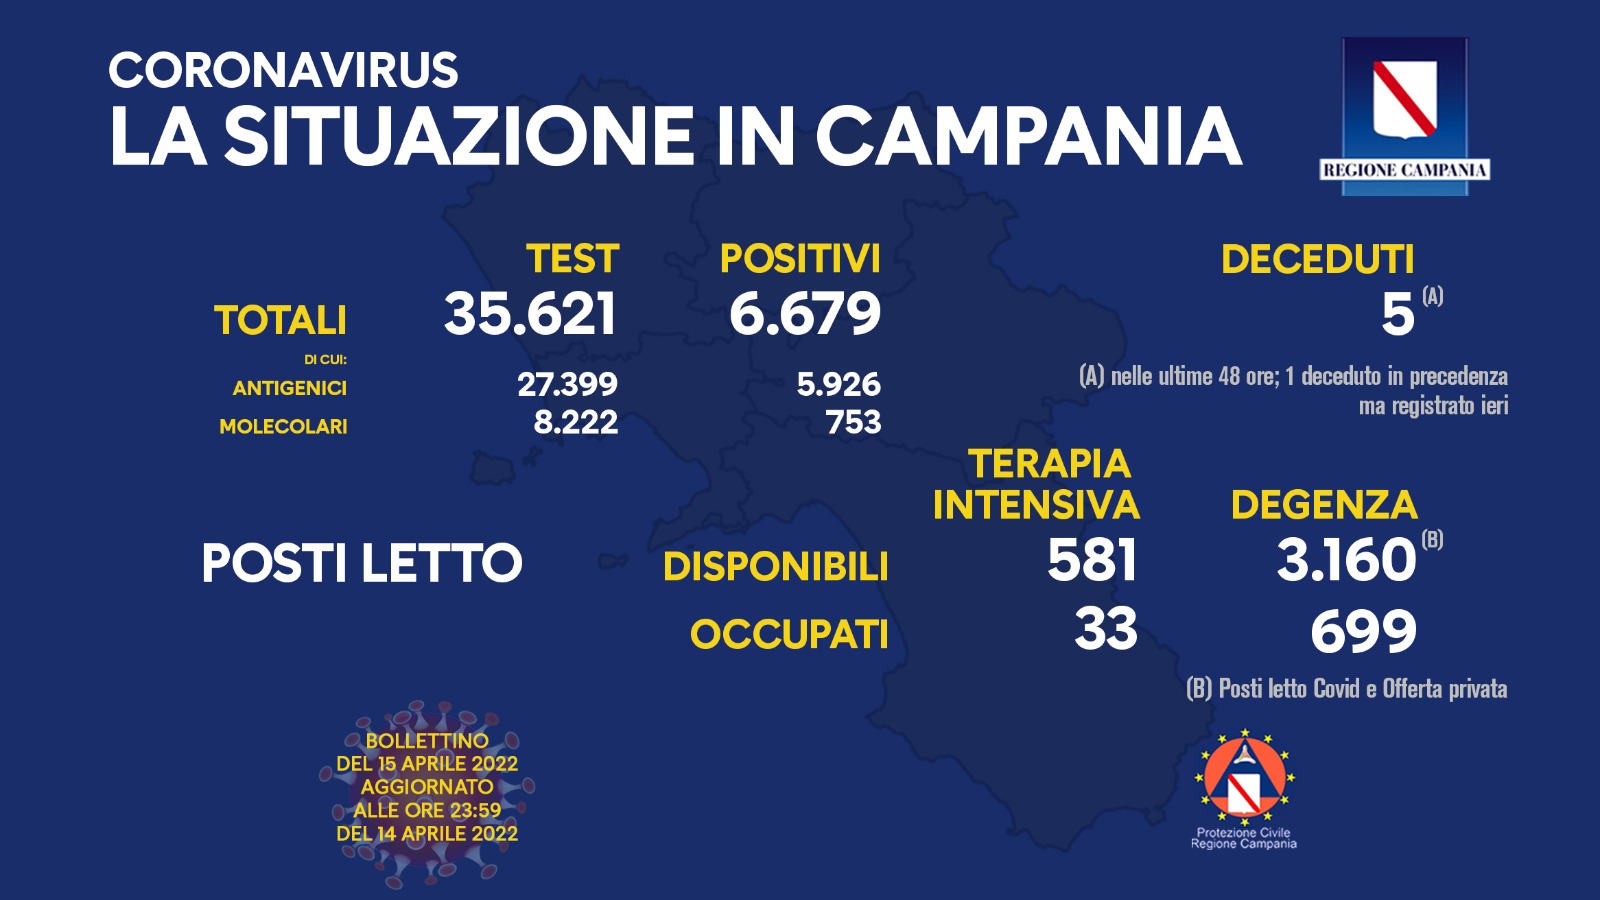 Covid 19 in Campania, bollettino 14 aprile: 6.679 positivi